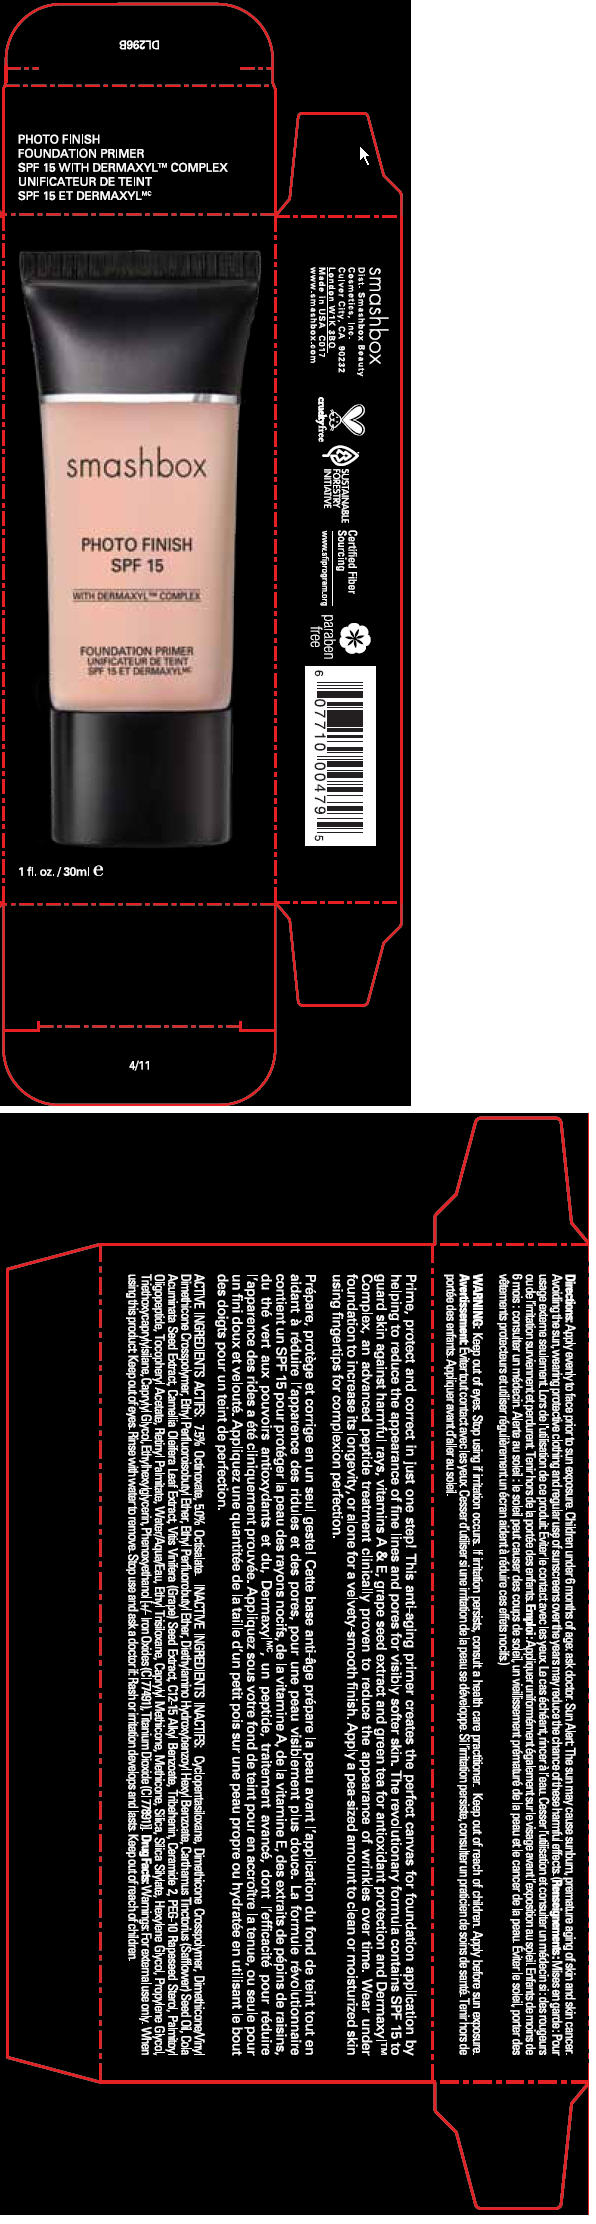 PRINCIPAL DISPLAY PANEL - 30 ml Tube Carton